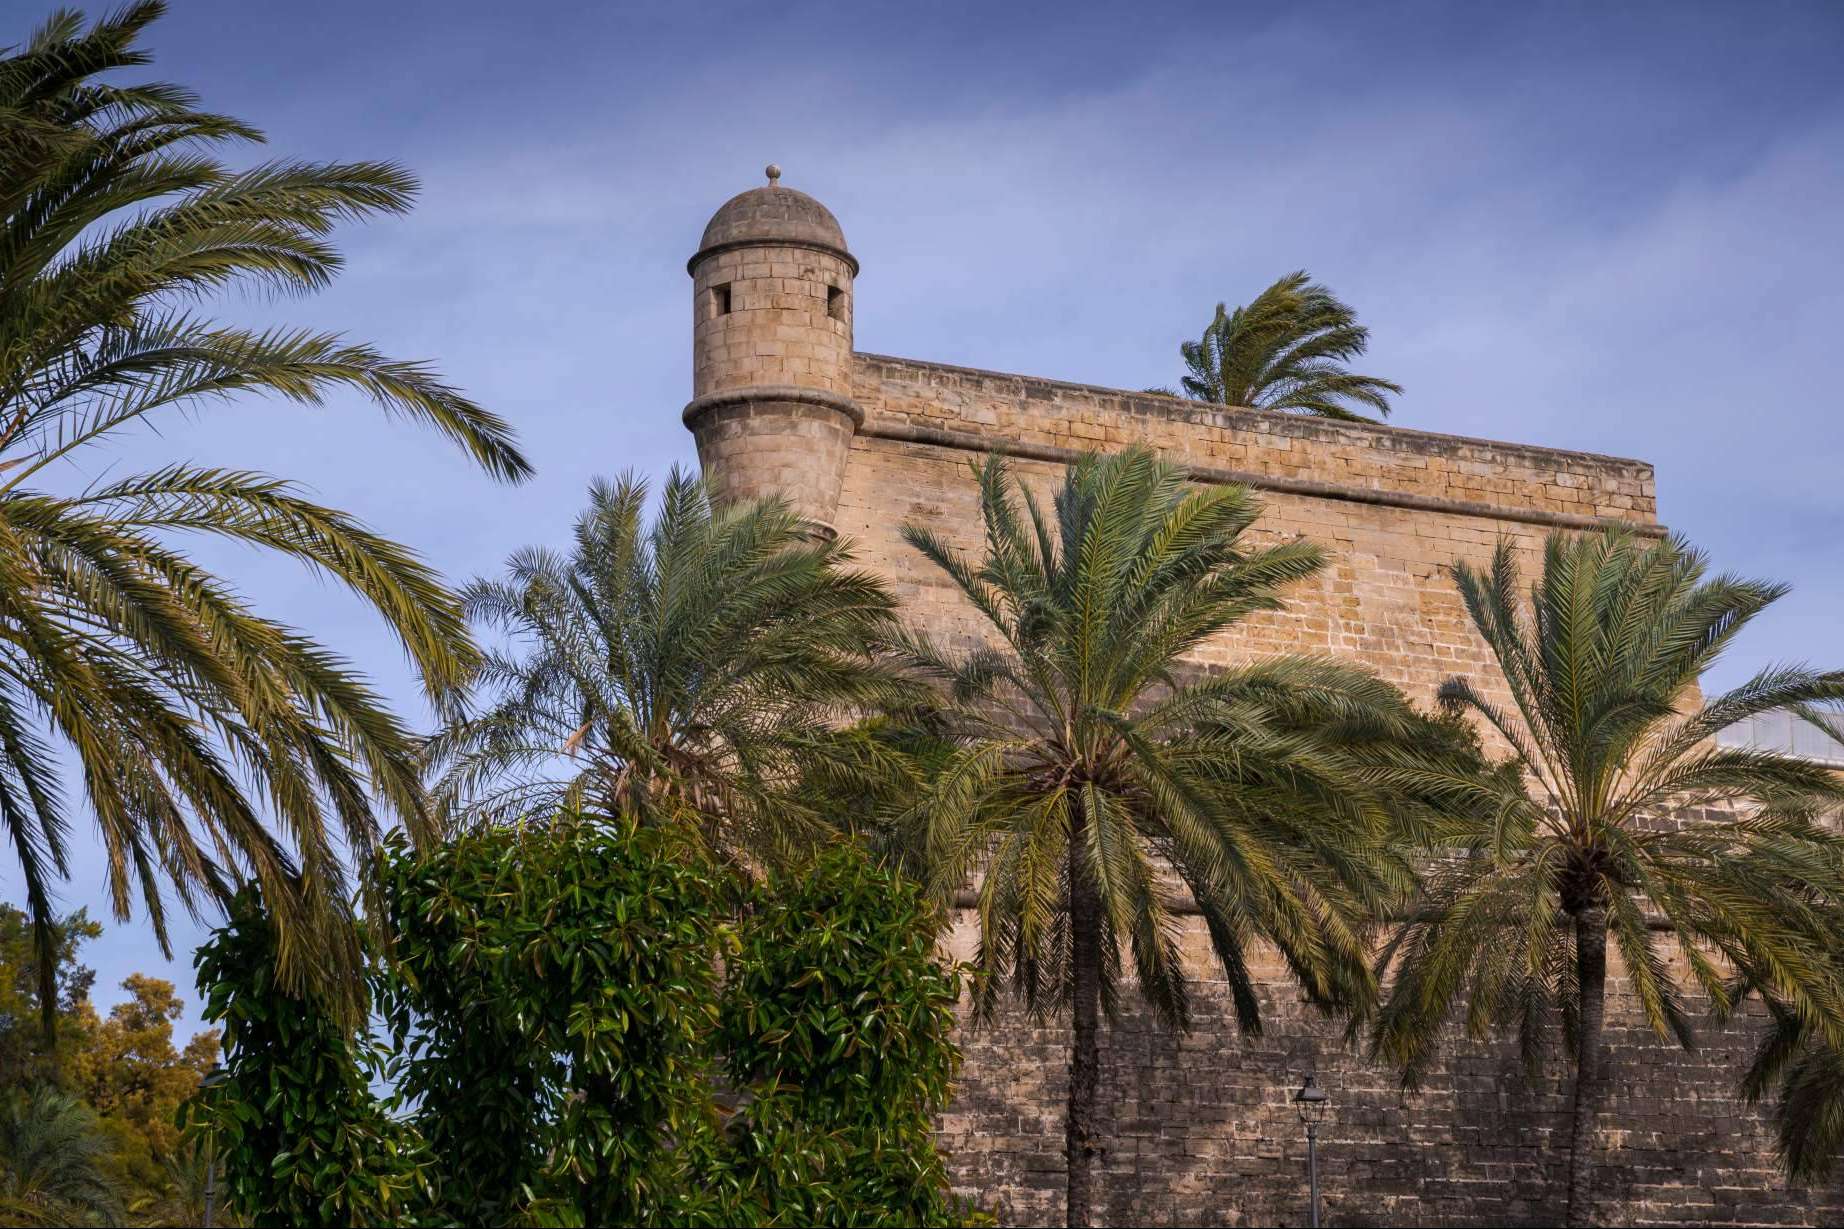 Alquilar, comprar o vender una vivienda en Palma de Mallorca, de la mano de Inmobiliaria Palma